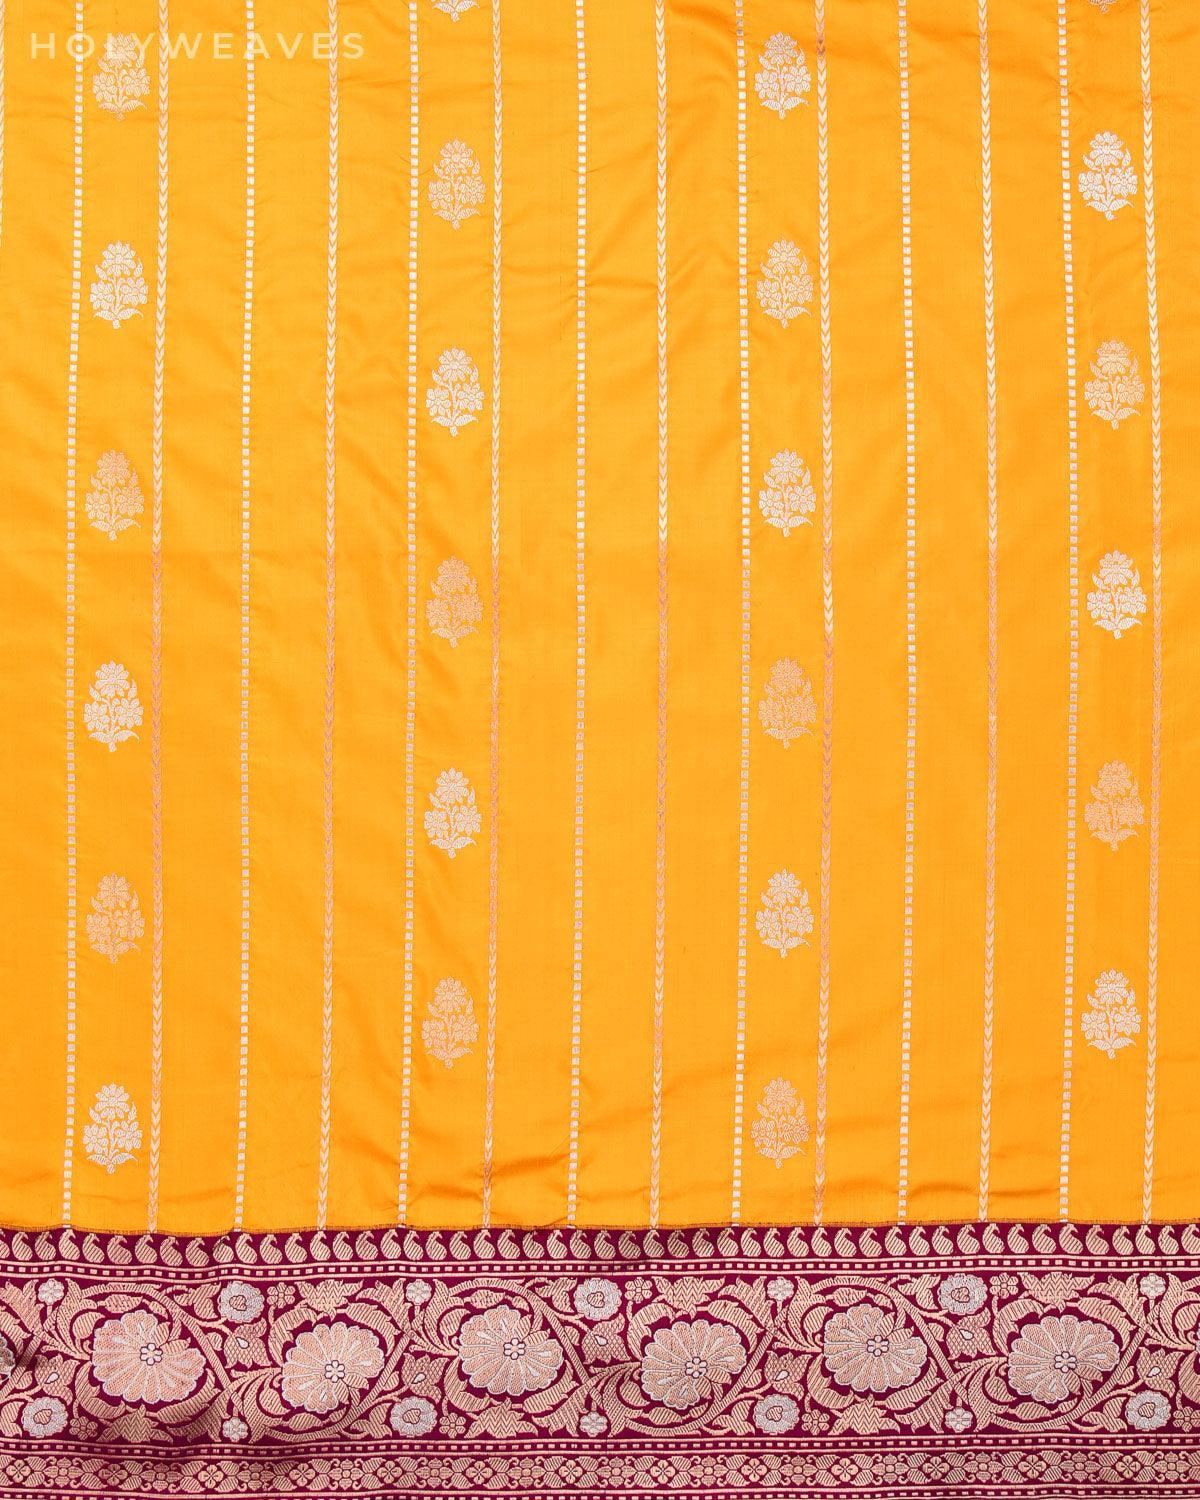 Golden Yellow Banarasi Sona Rupa Kadhuan Brocade Handwoven Katan Silk Saree - By HolyWeaves, Benares